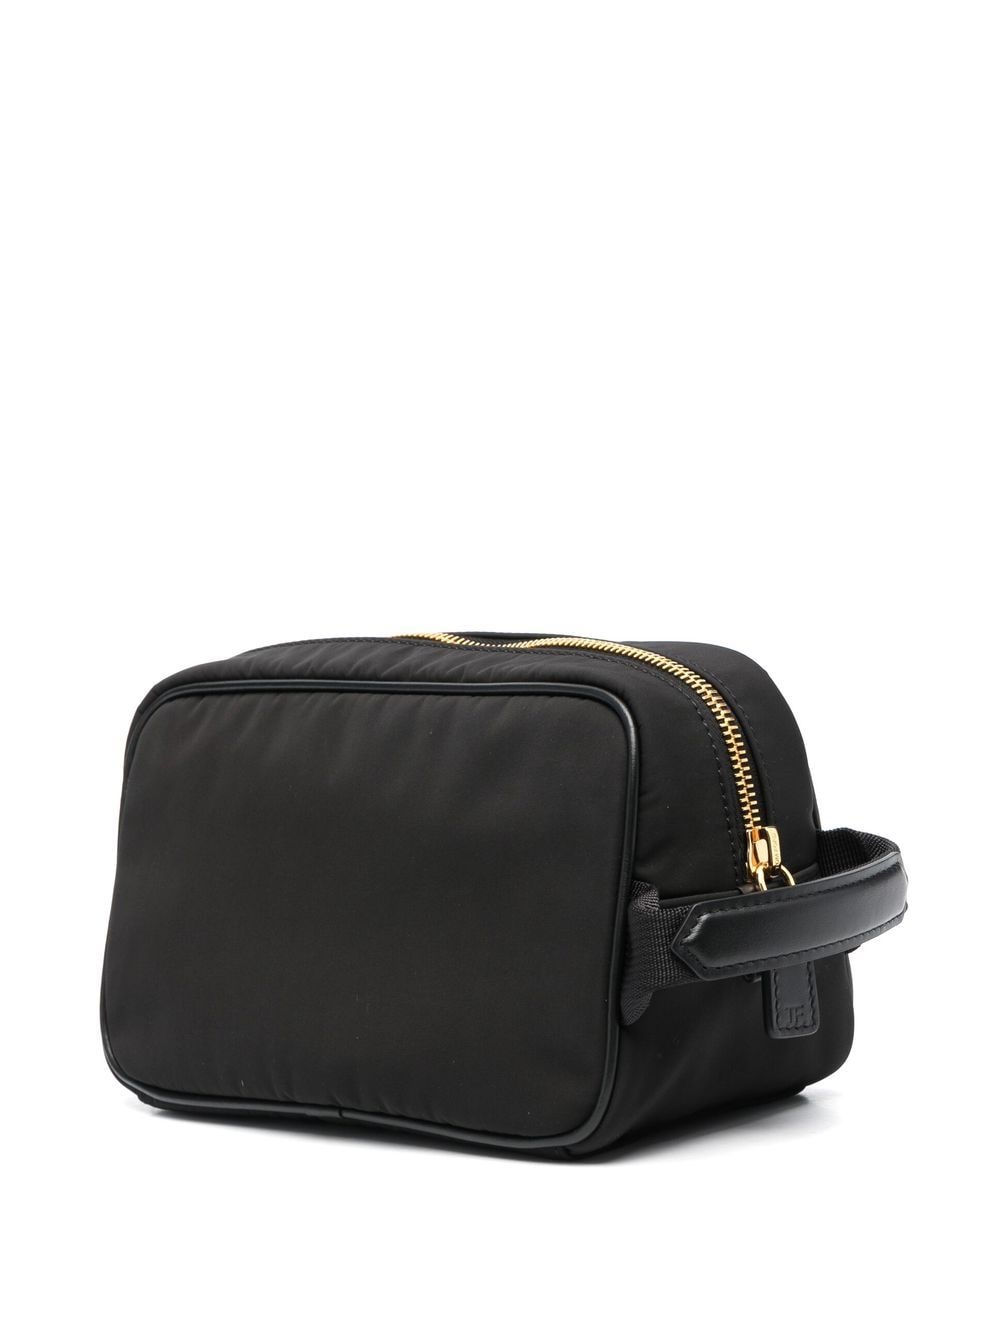 حقيبة يد سوداء بسحاب وشعار العلامة التجارية للرجال اتش اس ٢٤